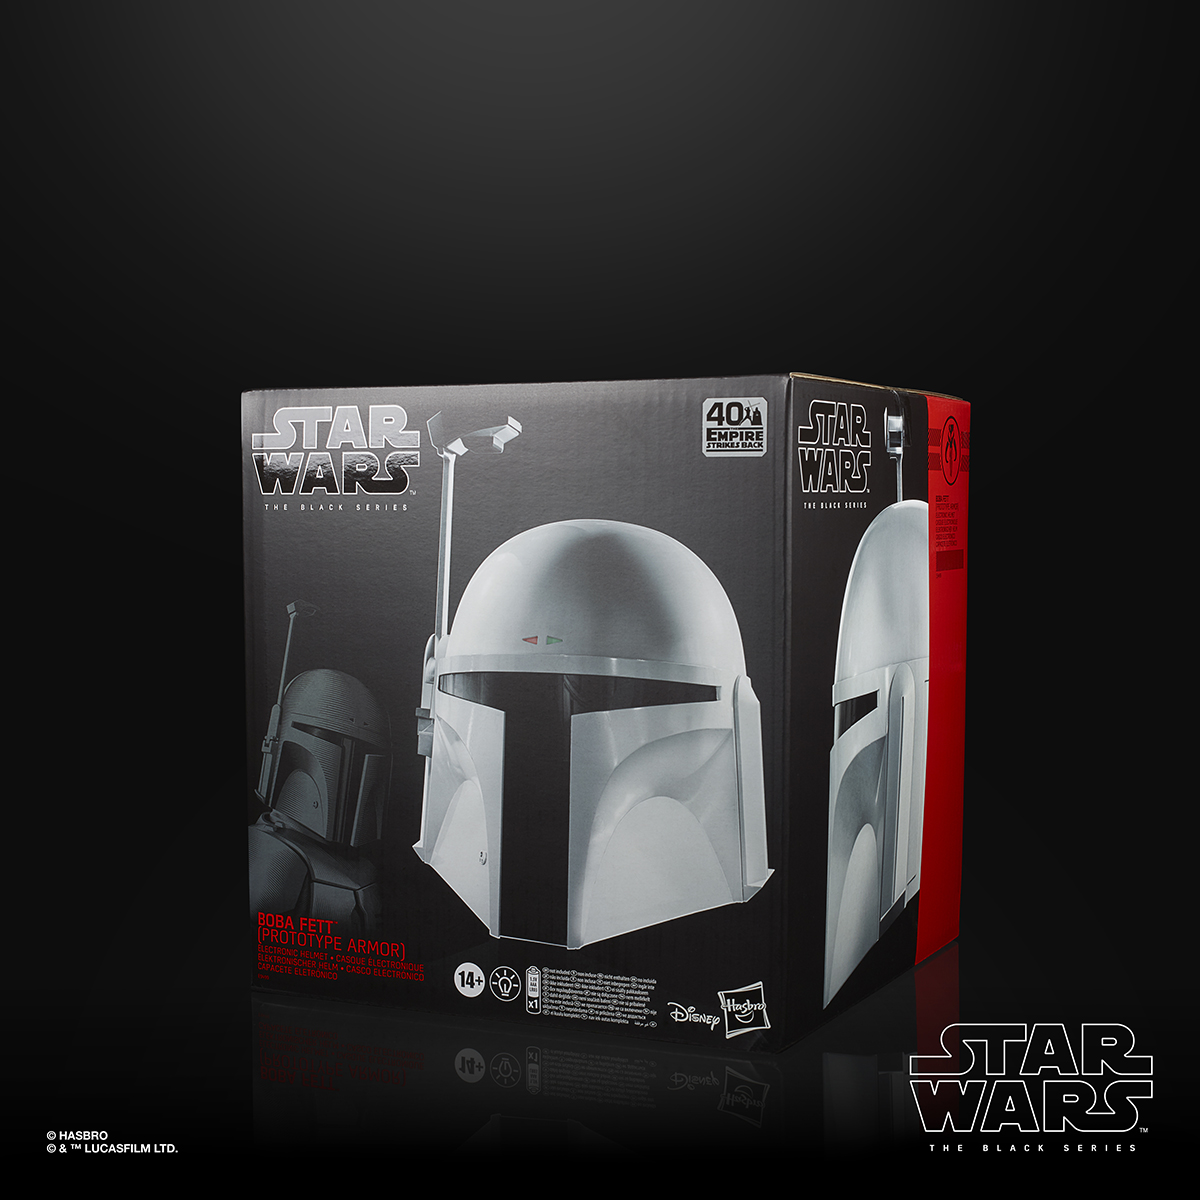 Star Wars The Black Series Boba Fett Prototype Armor Electronic Helmet In Pck 2